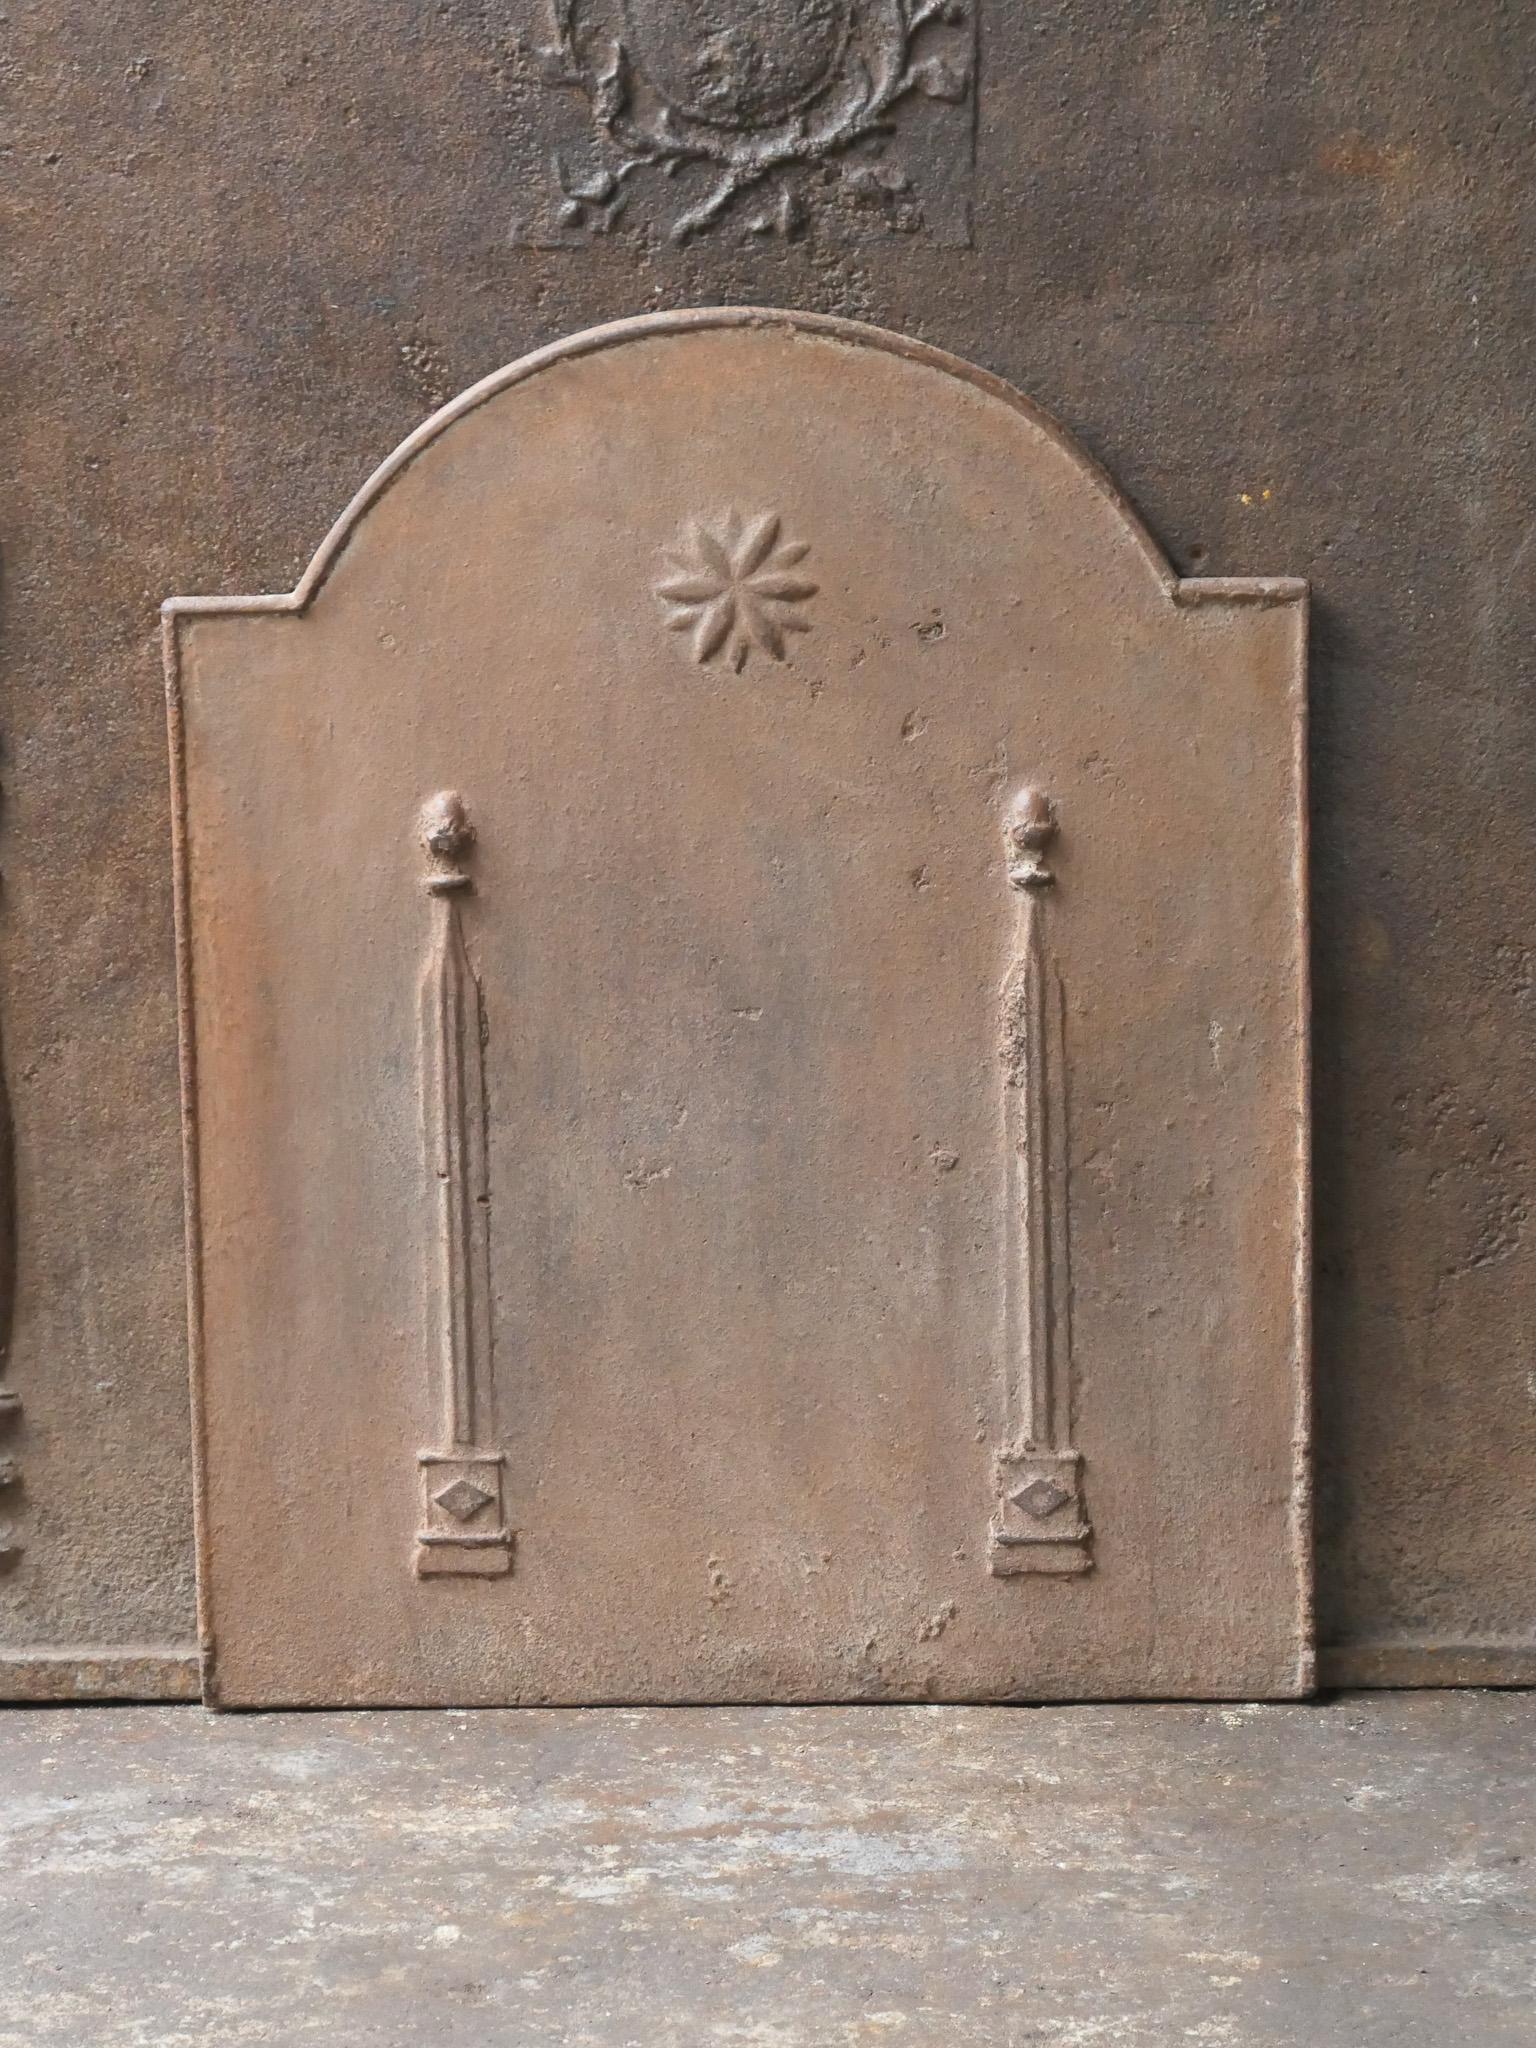 Plaque de cheminée néoclassique française du 18e - 19e siècle avec deux piliers de la liberté. Les piliers symbolisent la valeur liberté, l'une des trois valeurs de la Révolution française. 

La plaque de cheminée est en fonte et a une patine brune